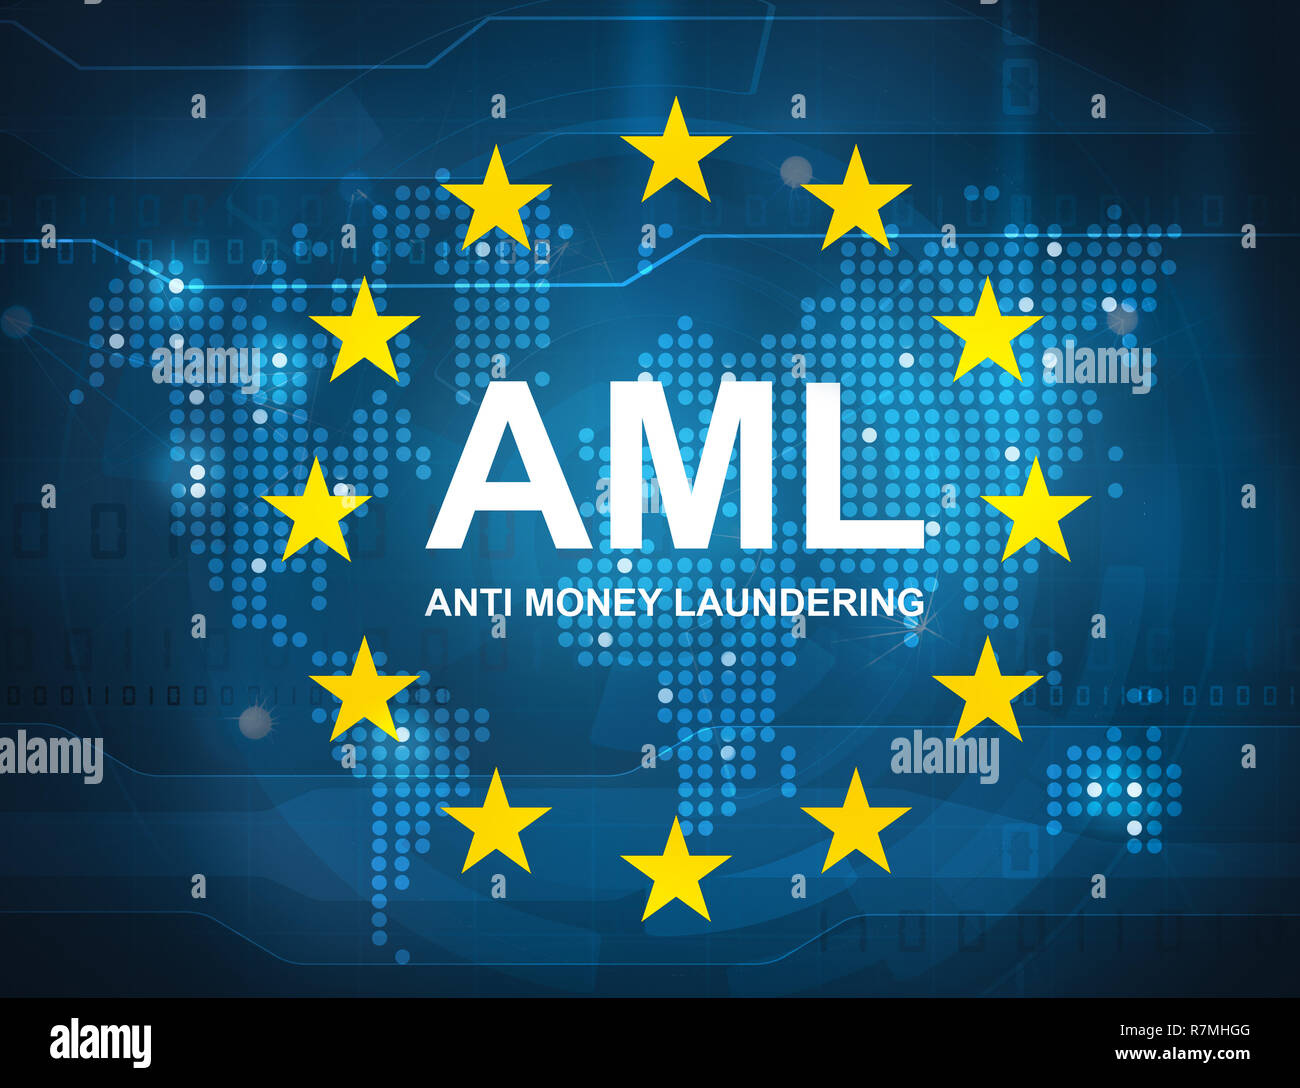 AML anti money laundering concept Stock Photo